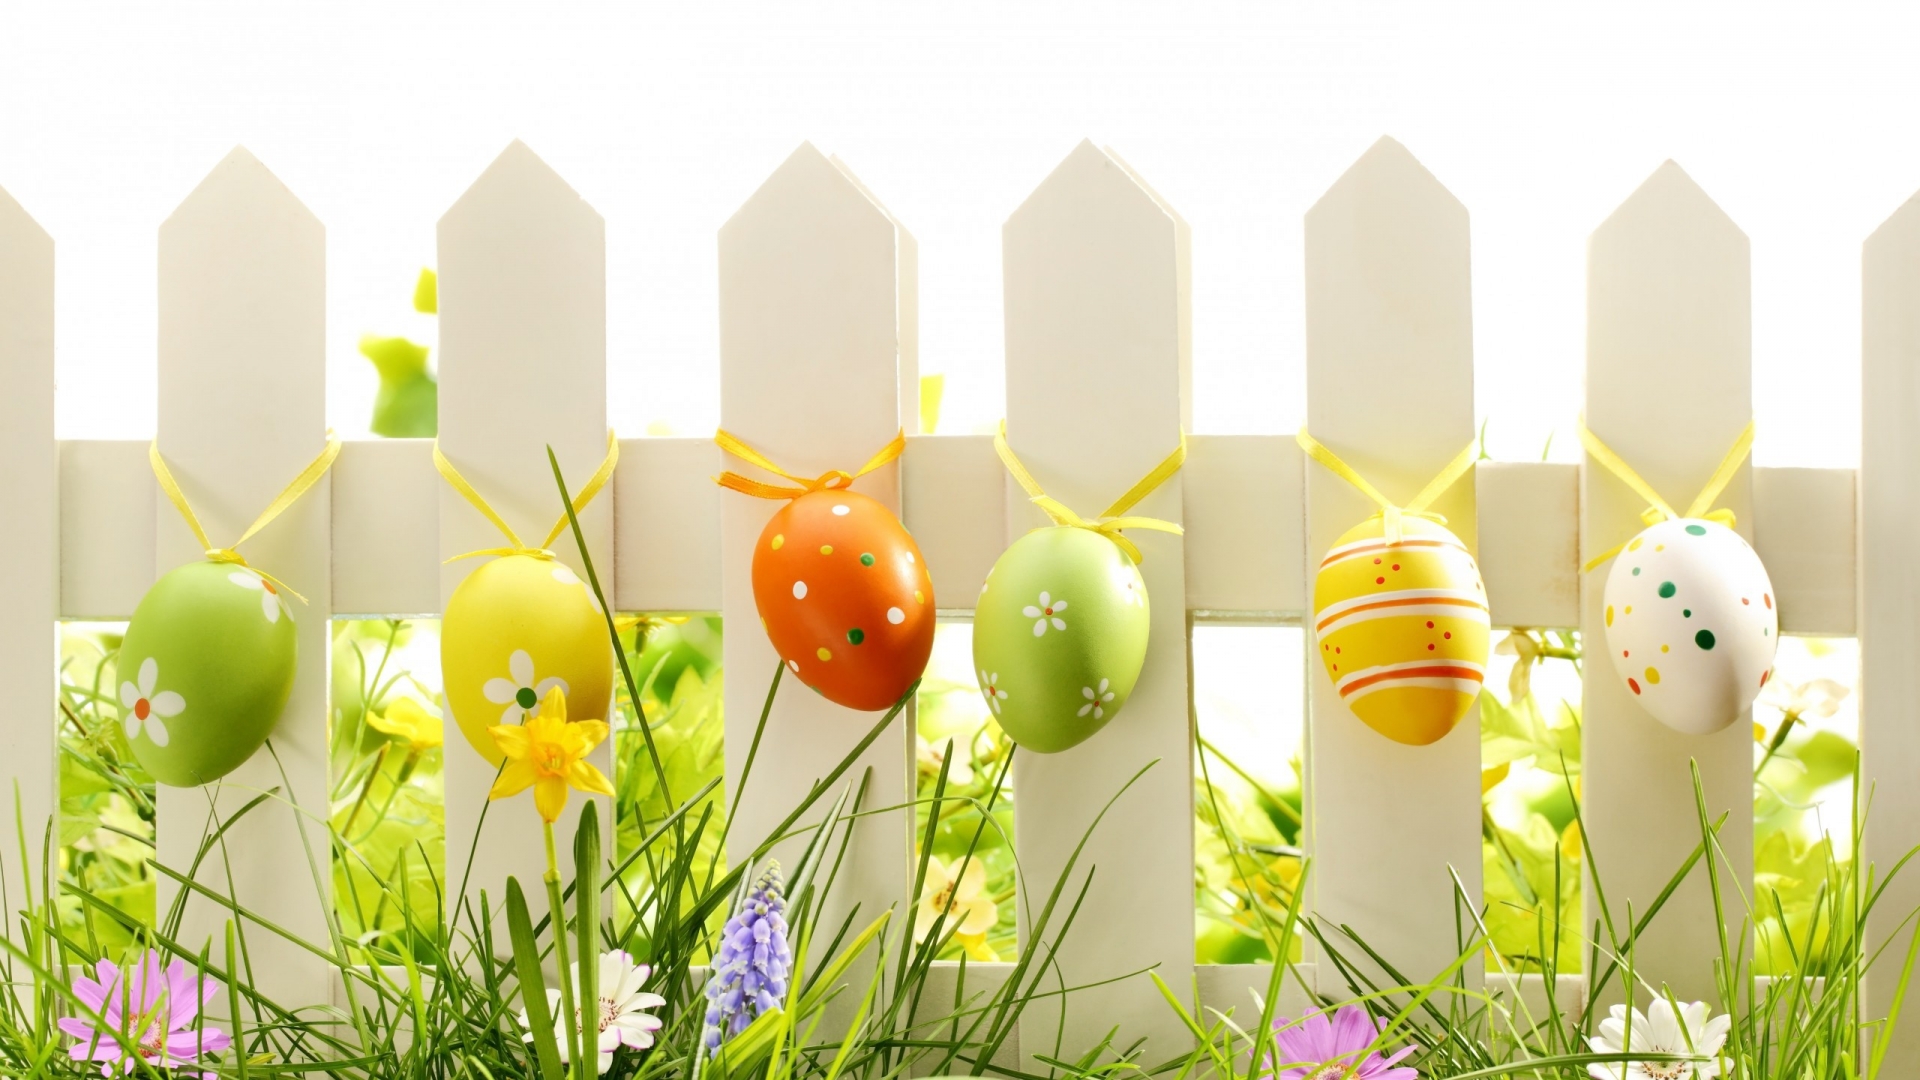 Lovely Easter Eggs Decoration for 1920 x 1080 HDTV 1080p resolution